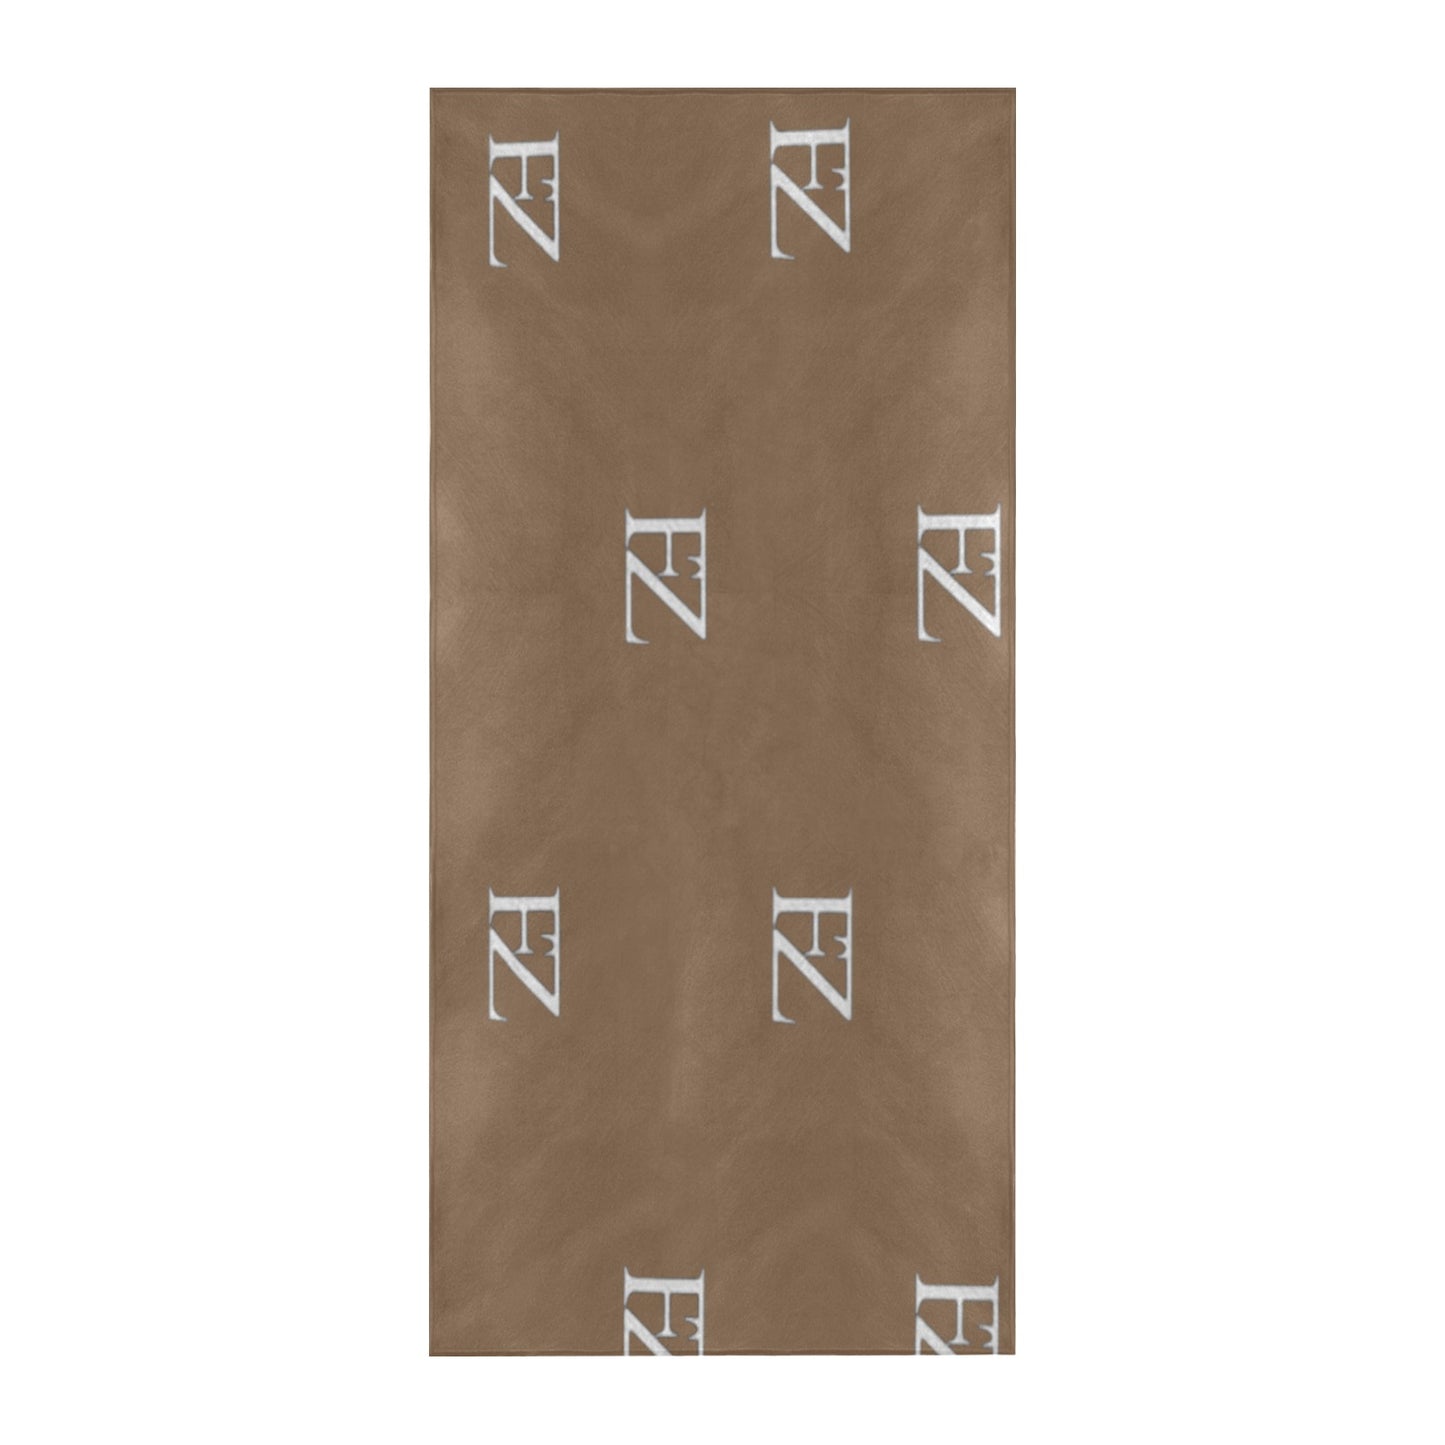 fz beach towel - brown beach towel 32"x 71"(made in queen)